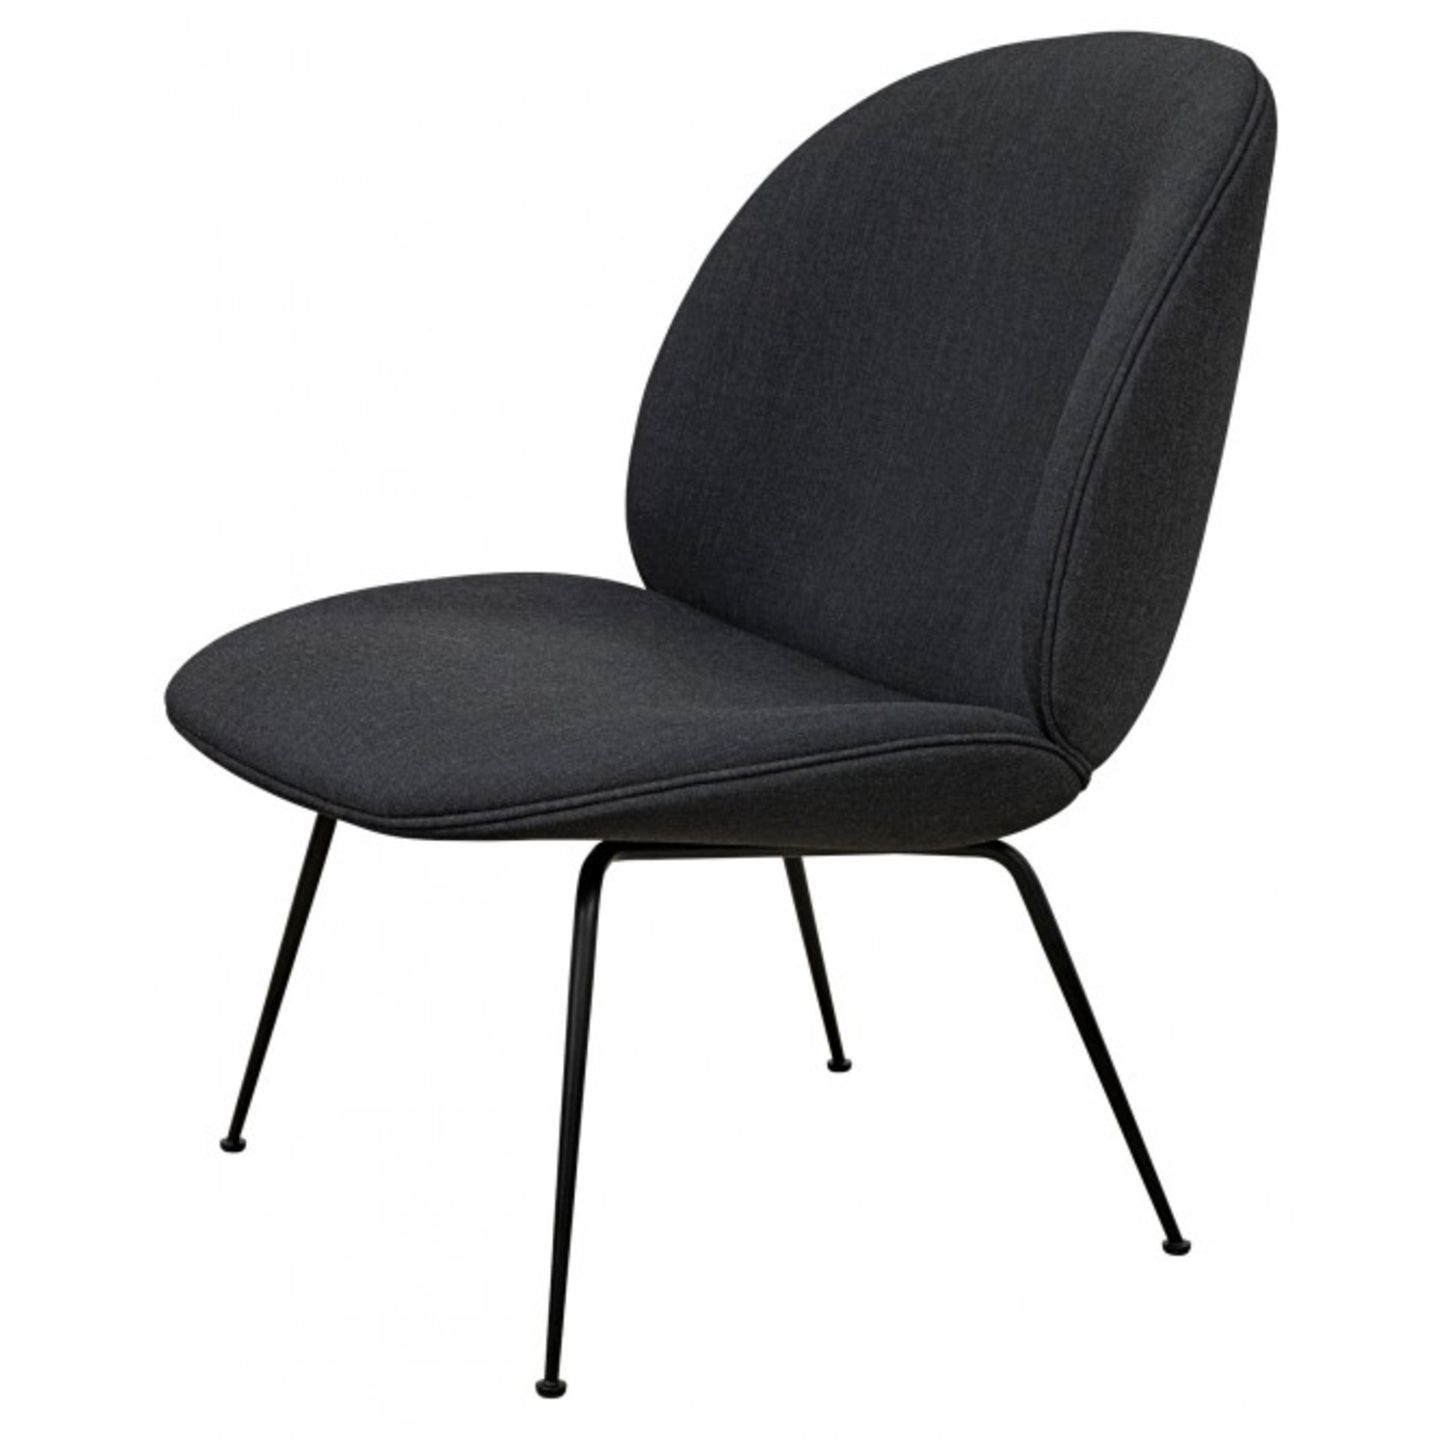 Beetle Lounge Chair